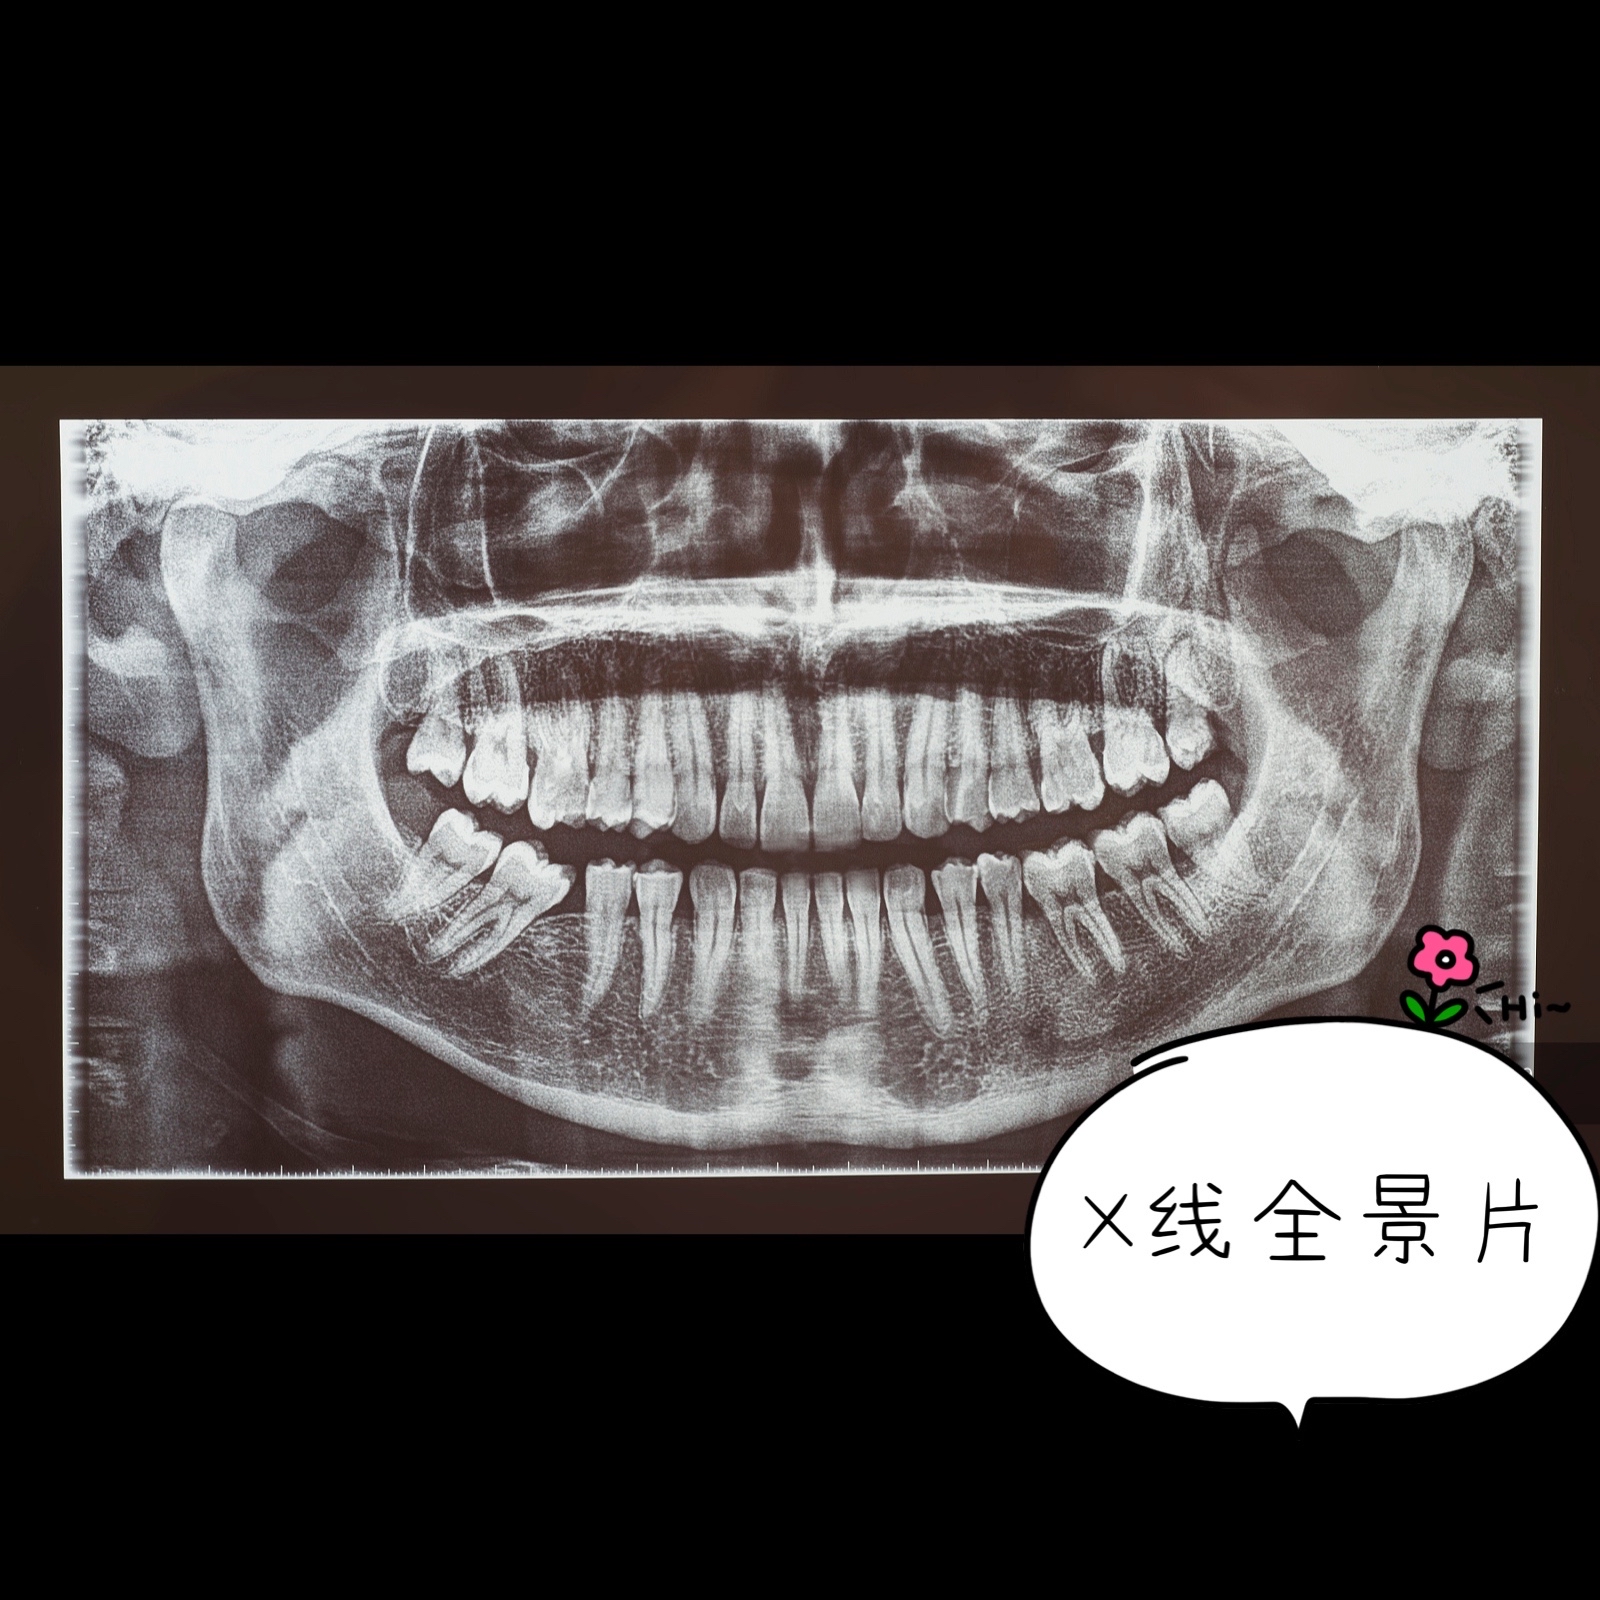 x线全景片是从正面拍一张能看得到你的全部牙齿的牙位,牙列,牙根情况